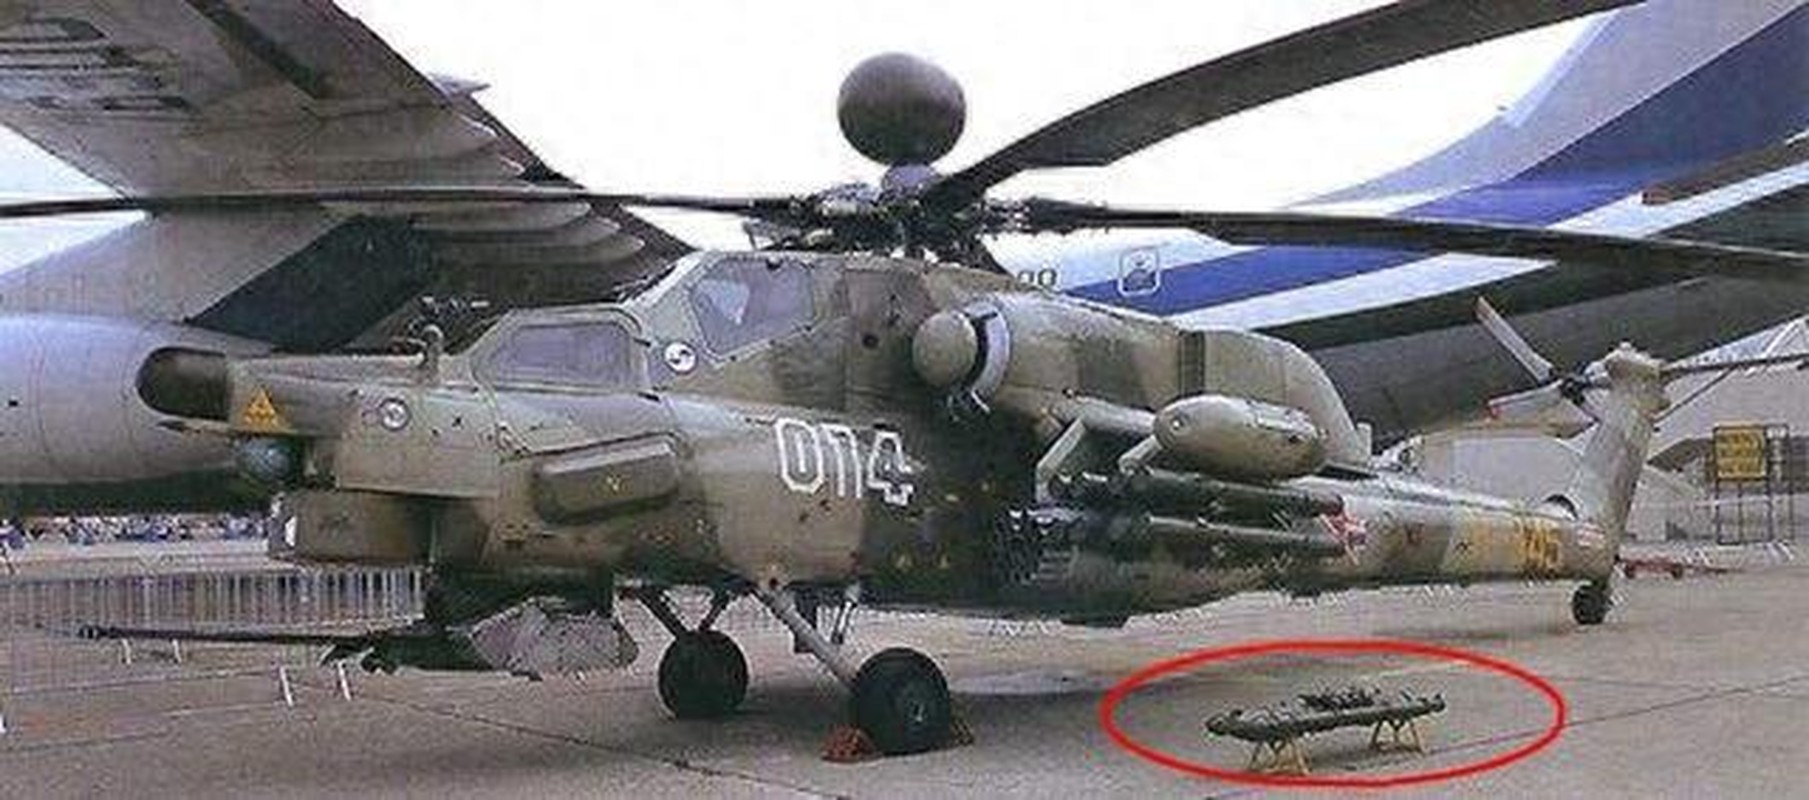 Tai sao truc thang vu trang Nga khong ban ha duoc UAV cua Ukraine?-Hinh-13